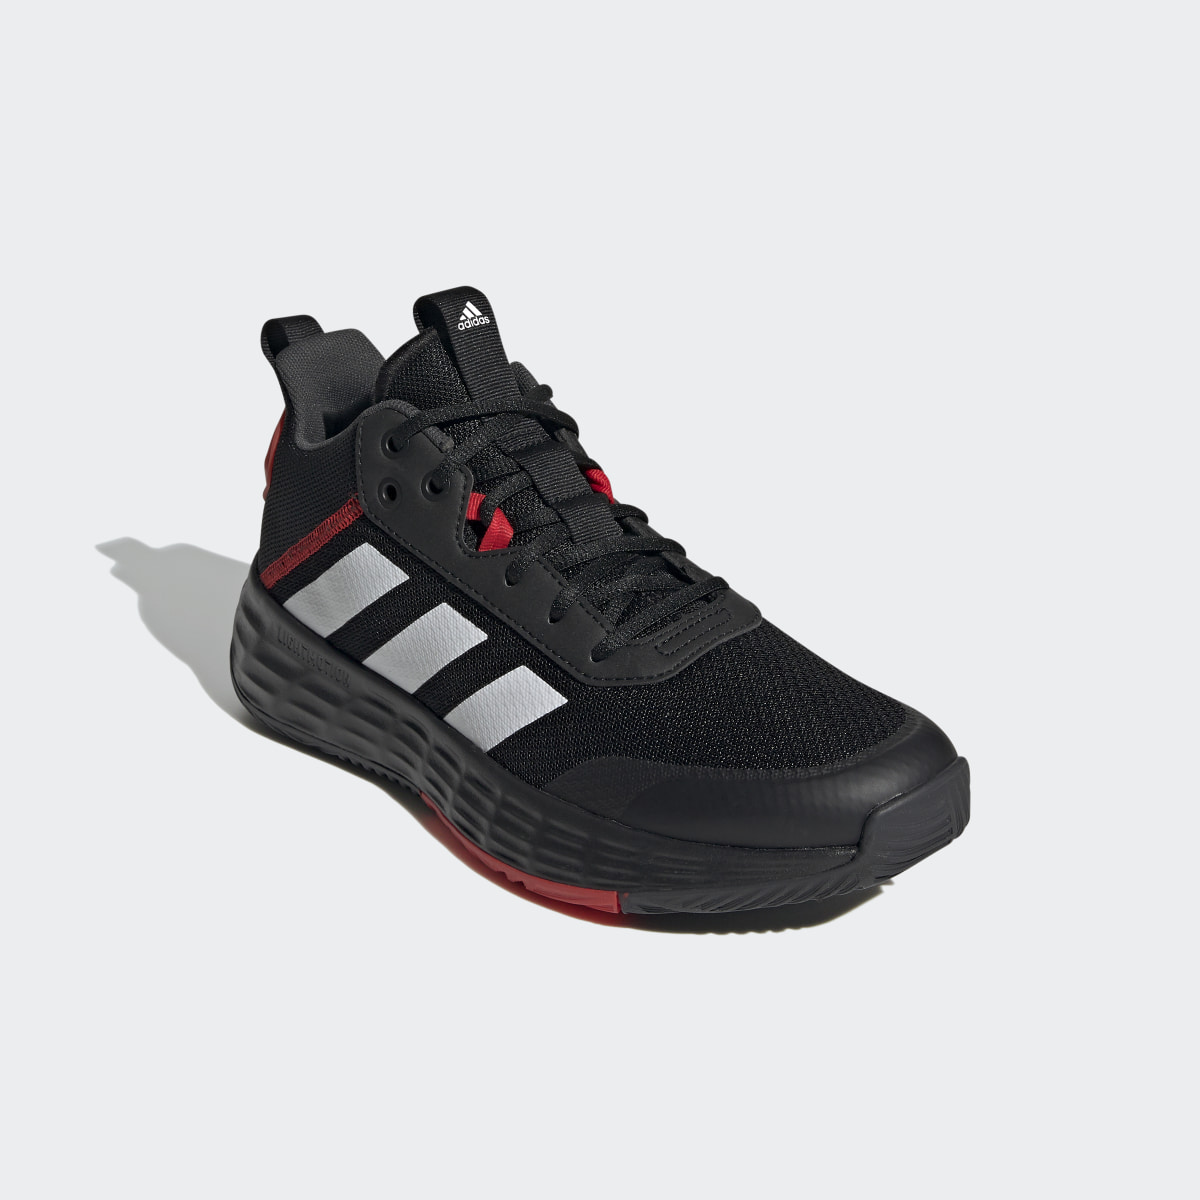 Adidas Ownthegame Ayakkabı. 5